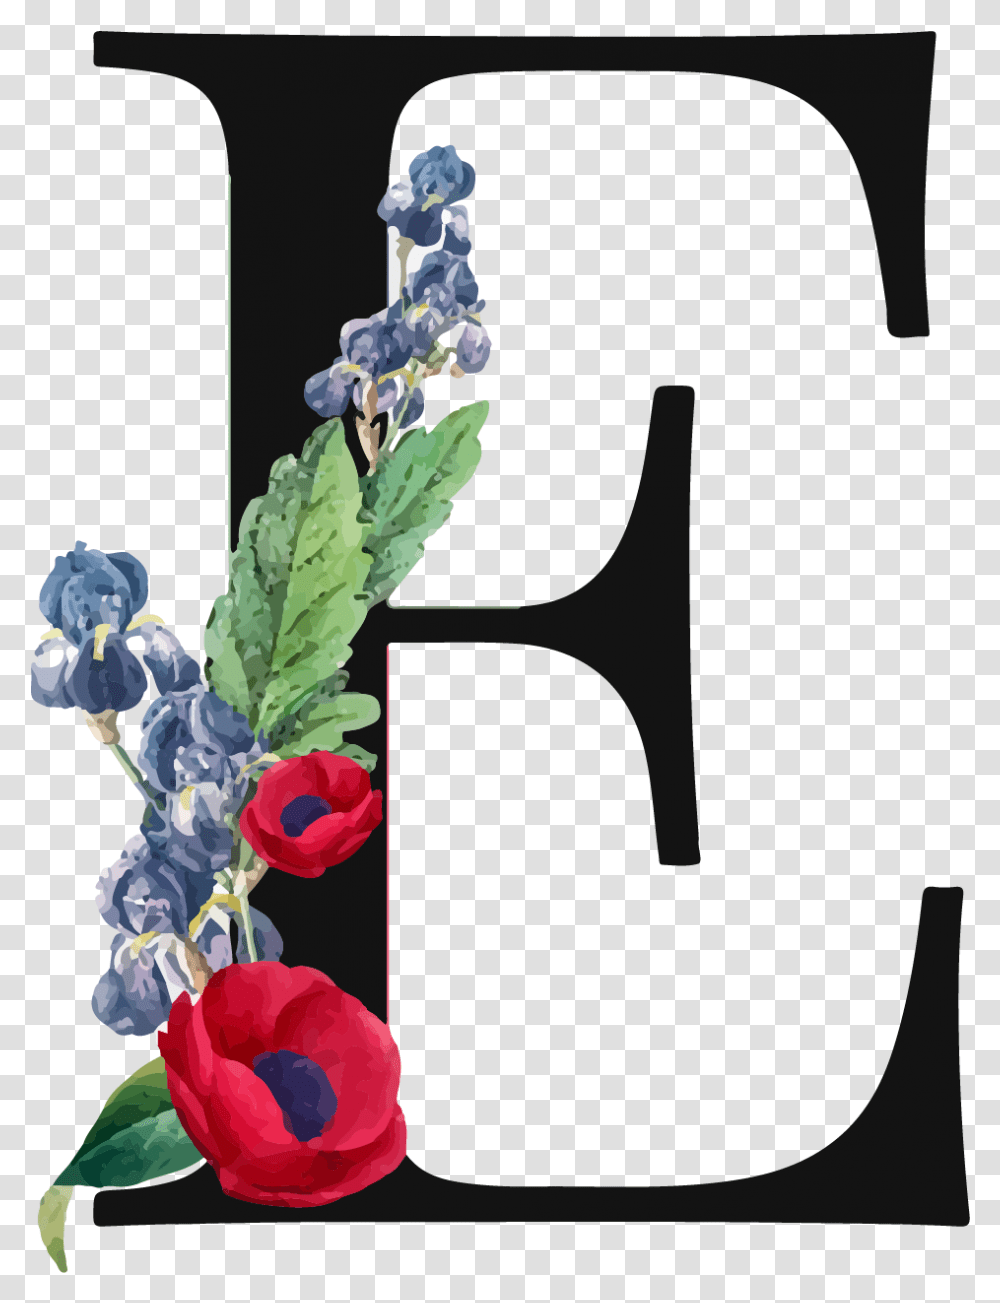 Letter E Royalty Free Image Pierre Joseph Redoute, Plant, Flower, Vase, Jar Transparent Png